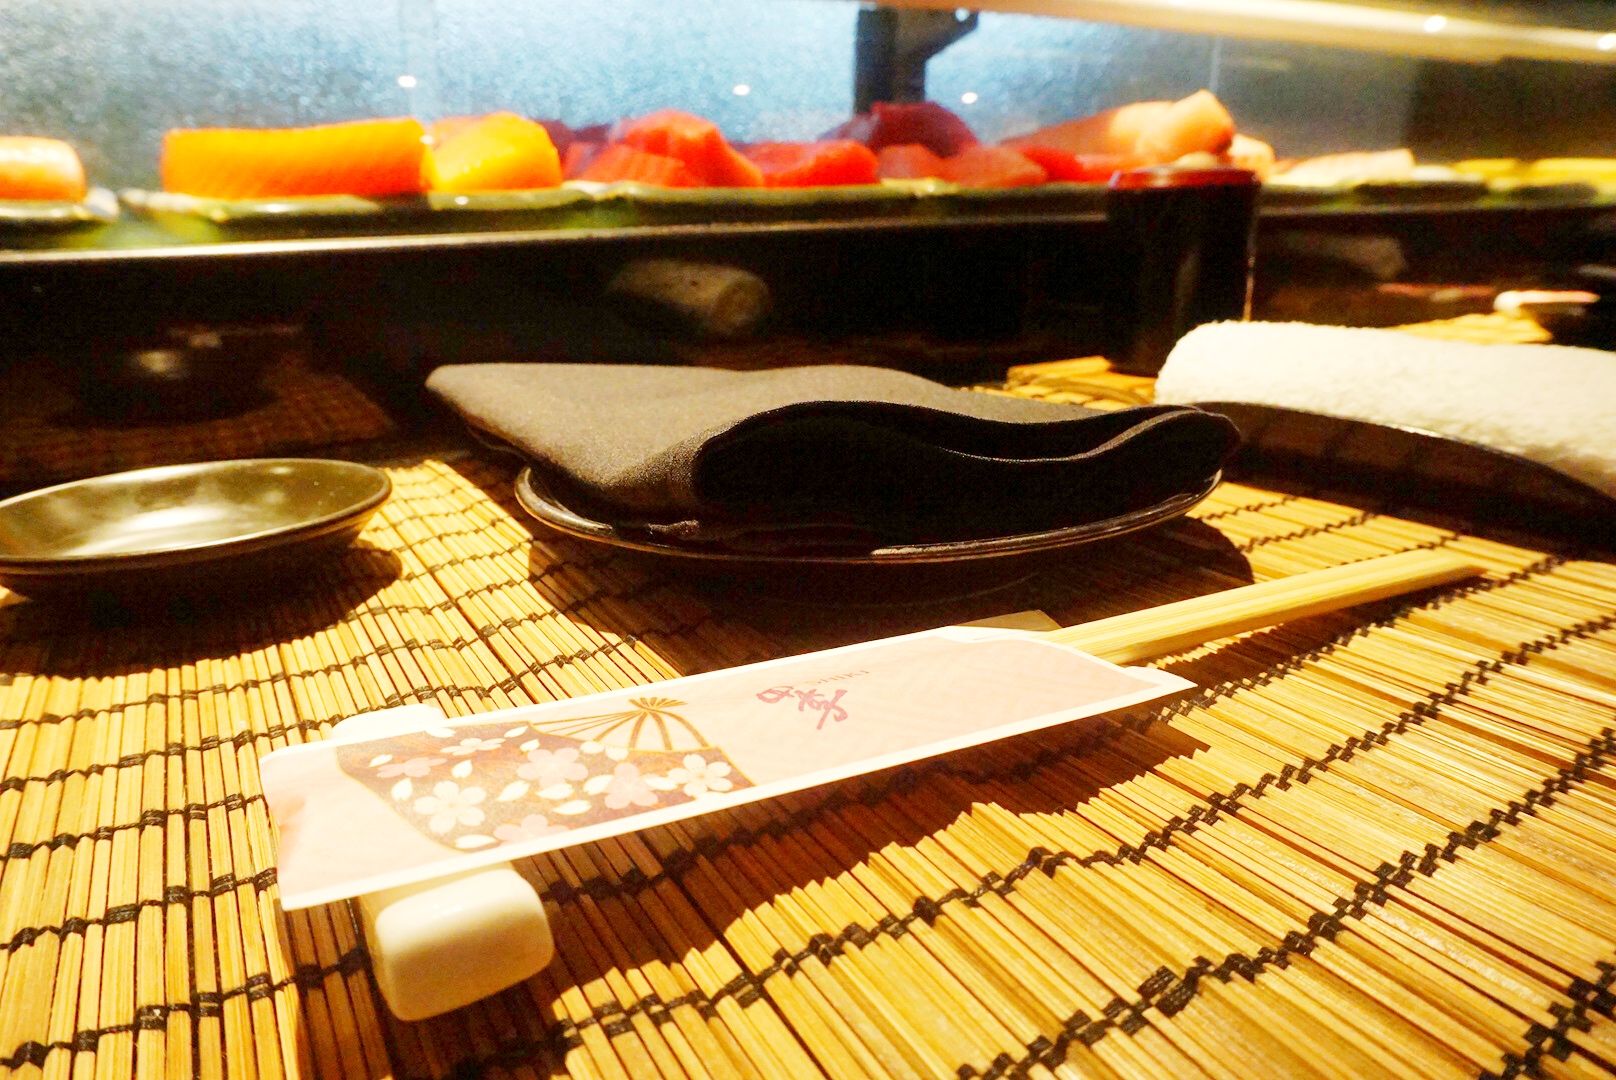 Shiki Japanese restaurant